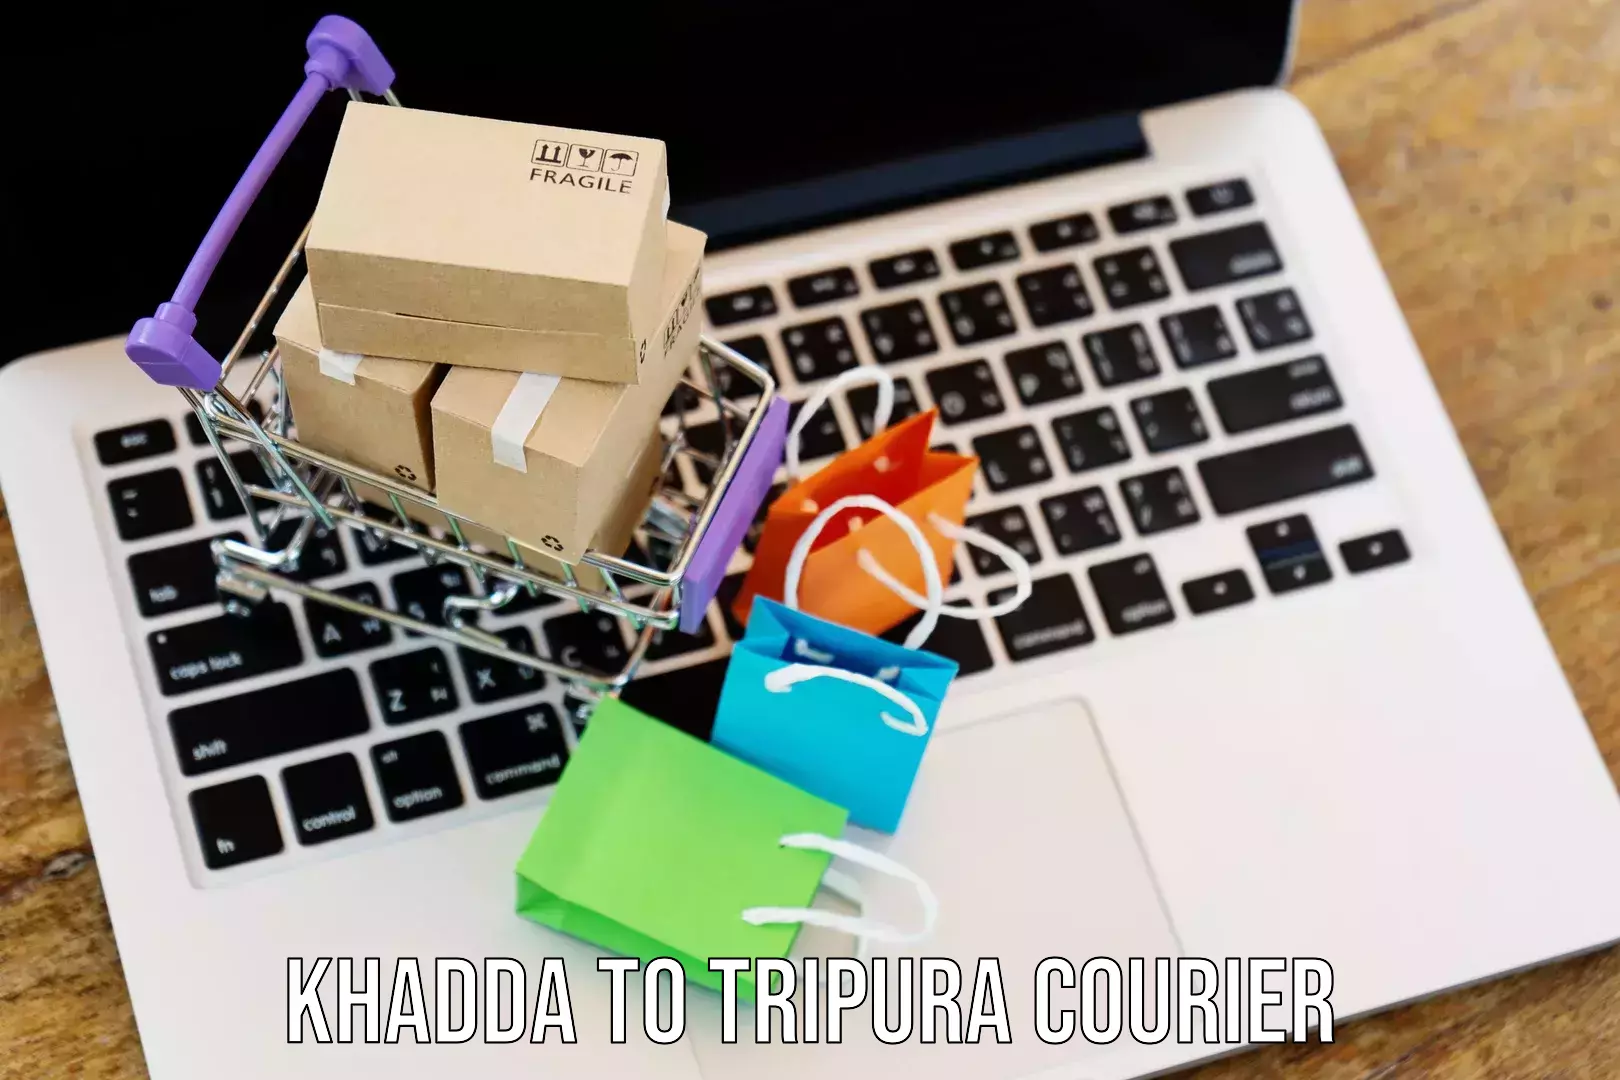 Smart logistics strategies Khadda to Tripura